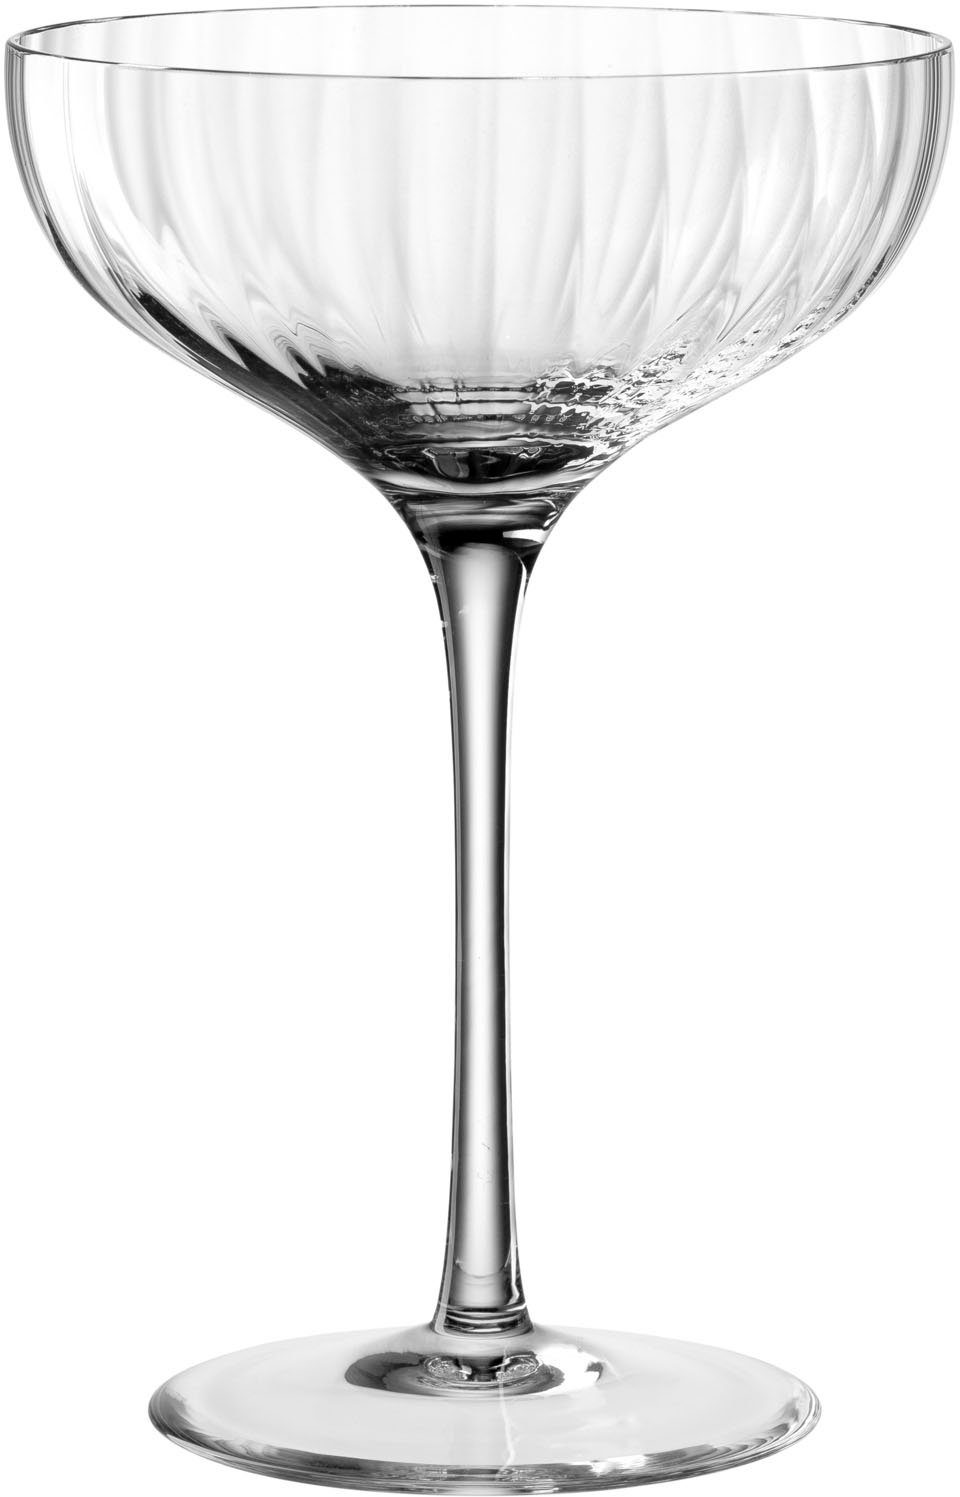 LEONARDO Champagnerglas POESIA, Kristallglas, 260 ml, 6-teilig